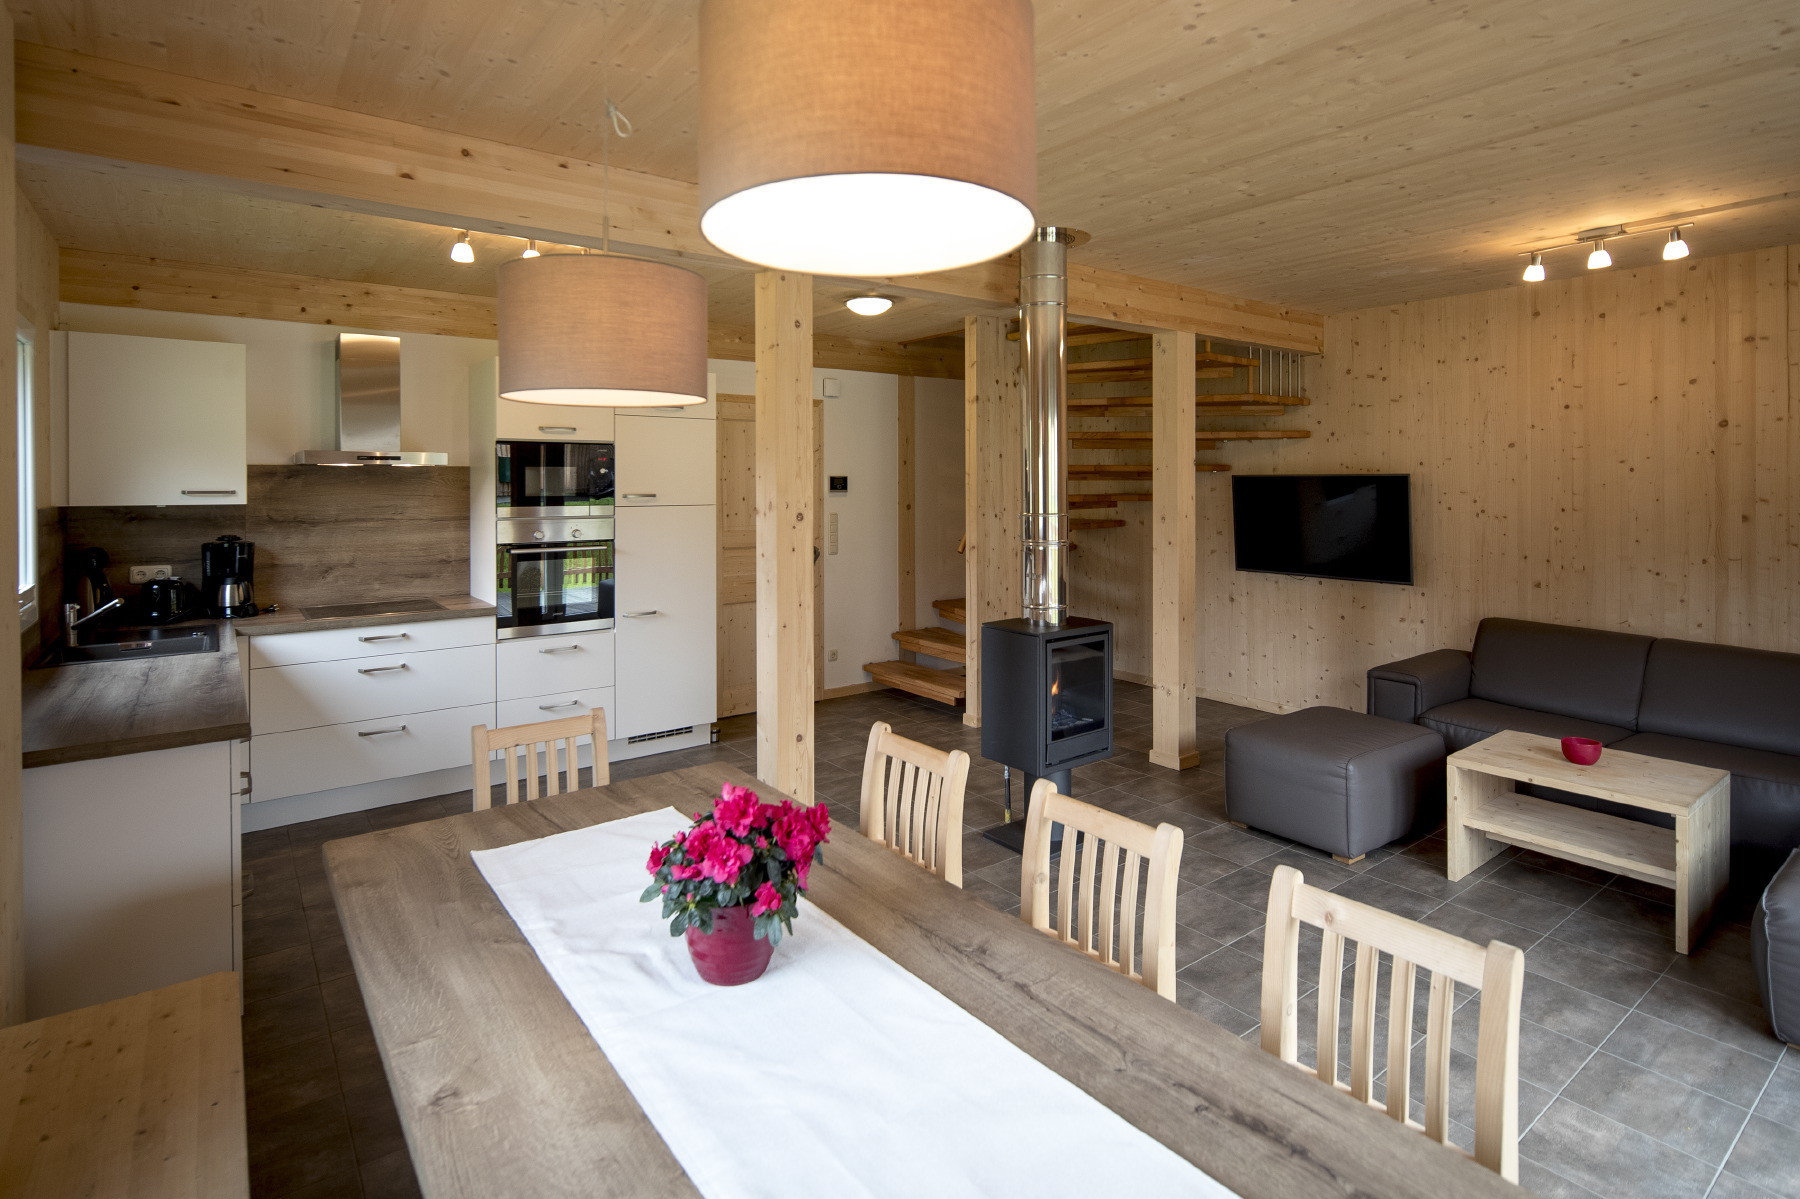  in St. Georgen am Kreischberg - Chalet # 34a with 4 bedrooms & IR sauna